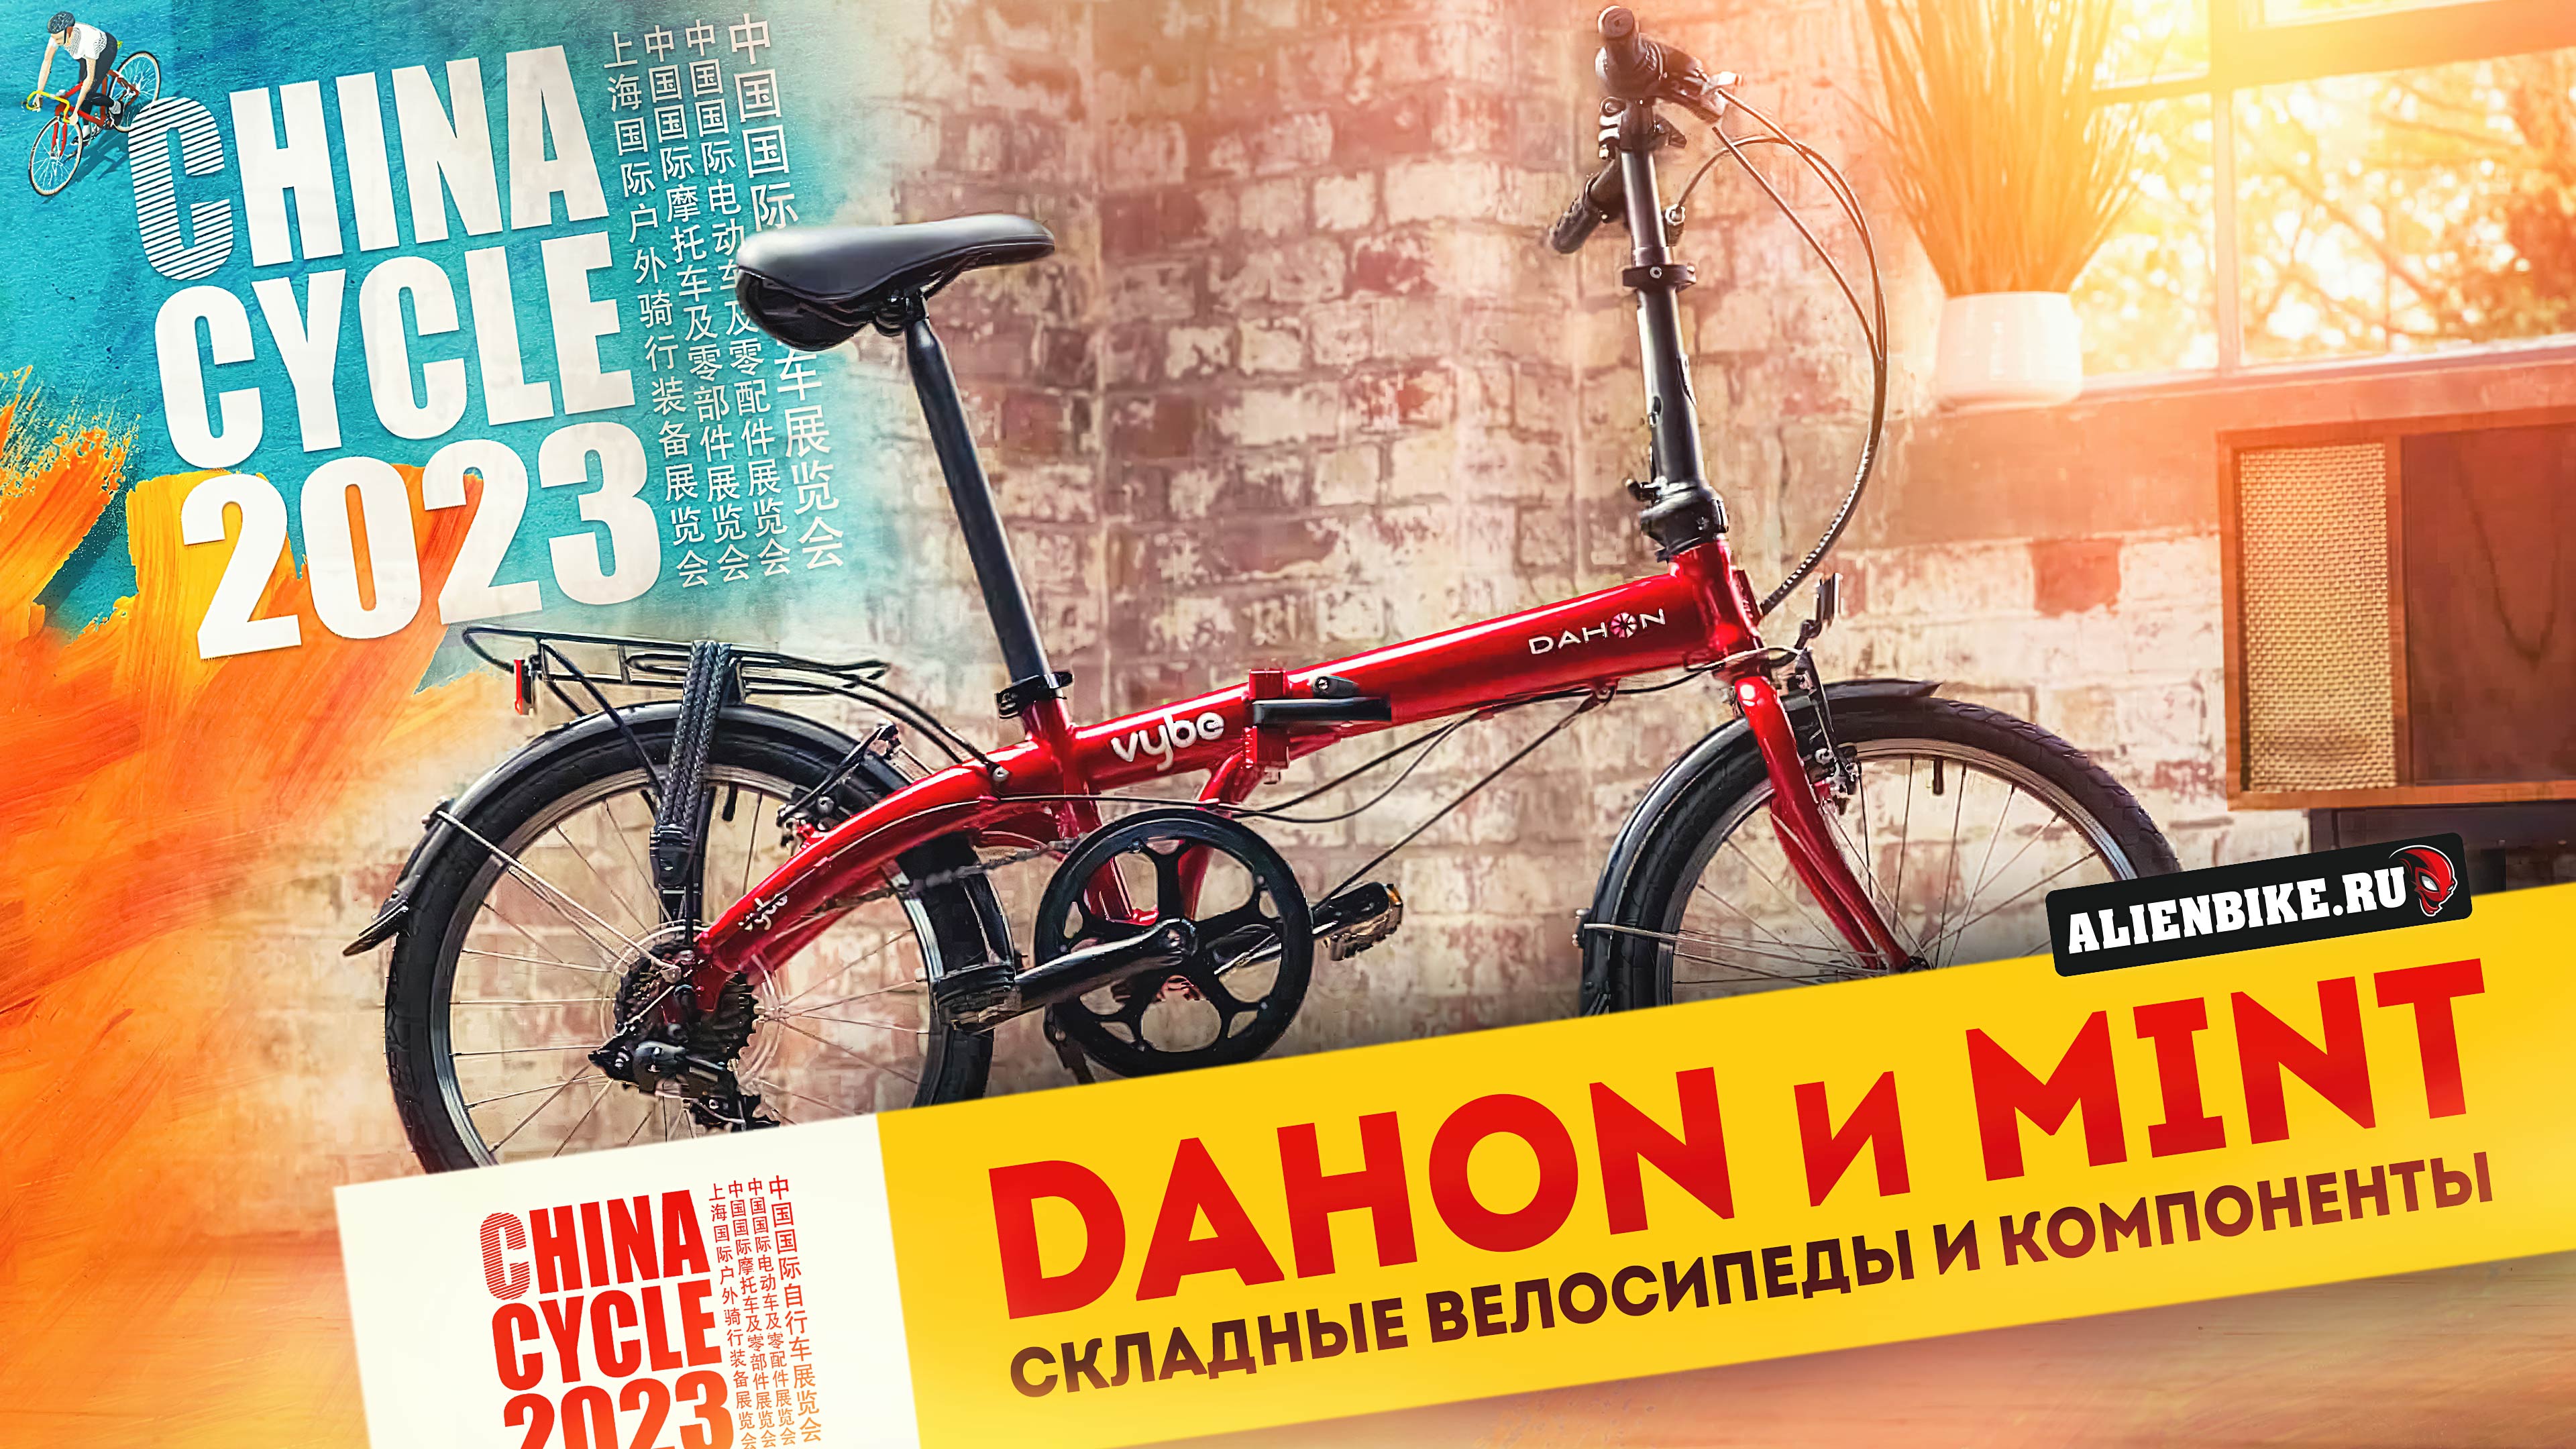 Крутые складные велосипеды DAHON // Велосипеды MINT // Детали и компоненты | China Cycle 2023